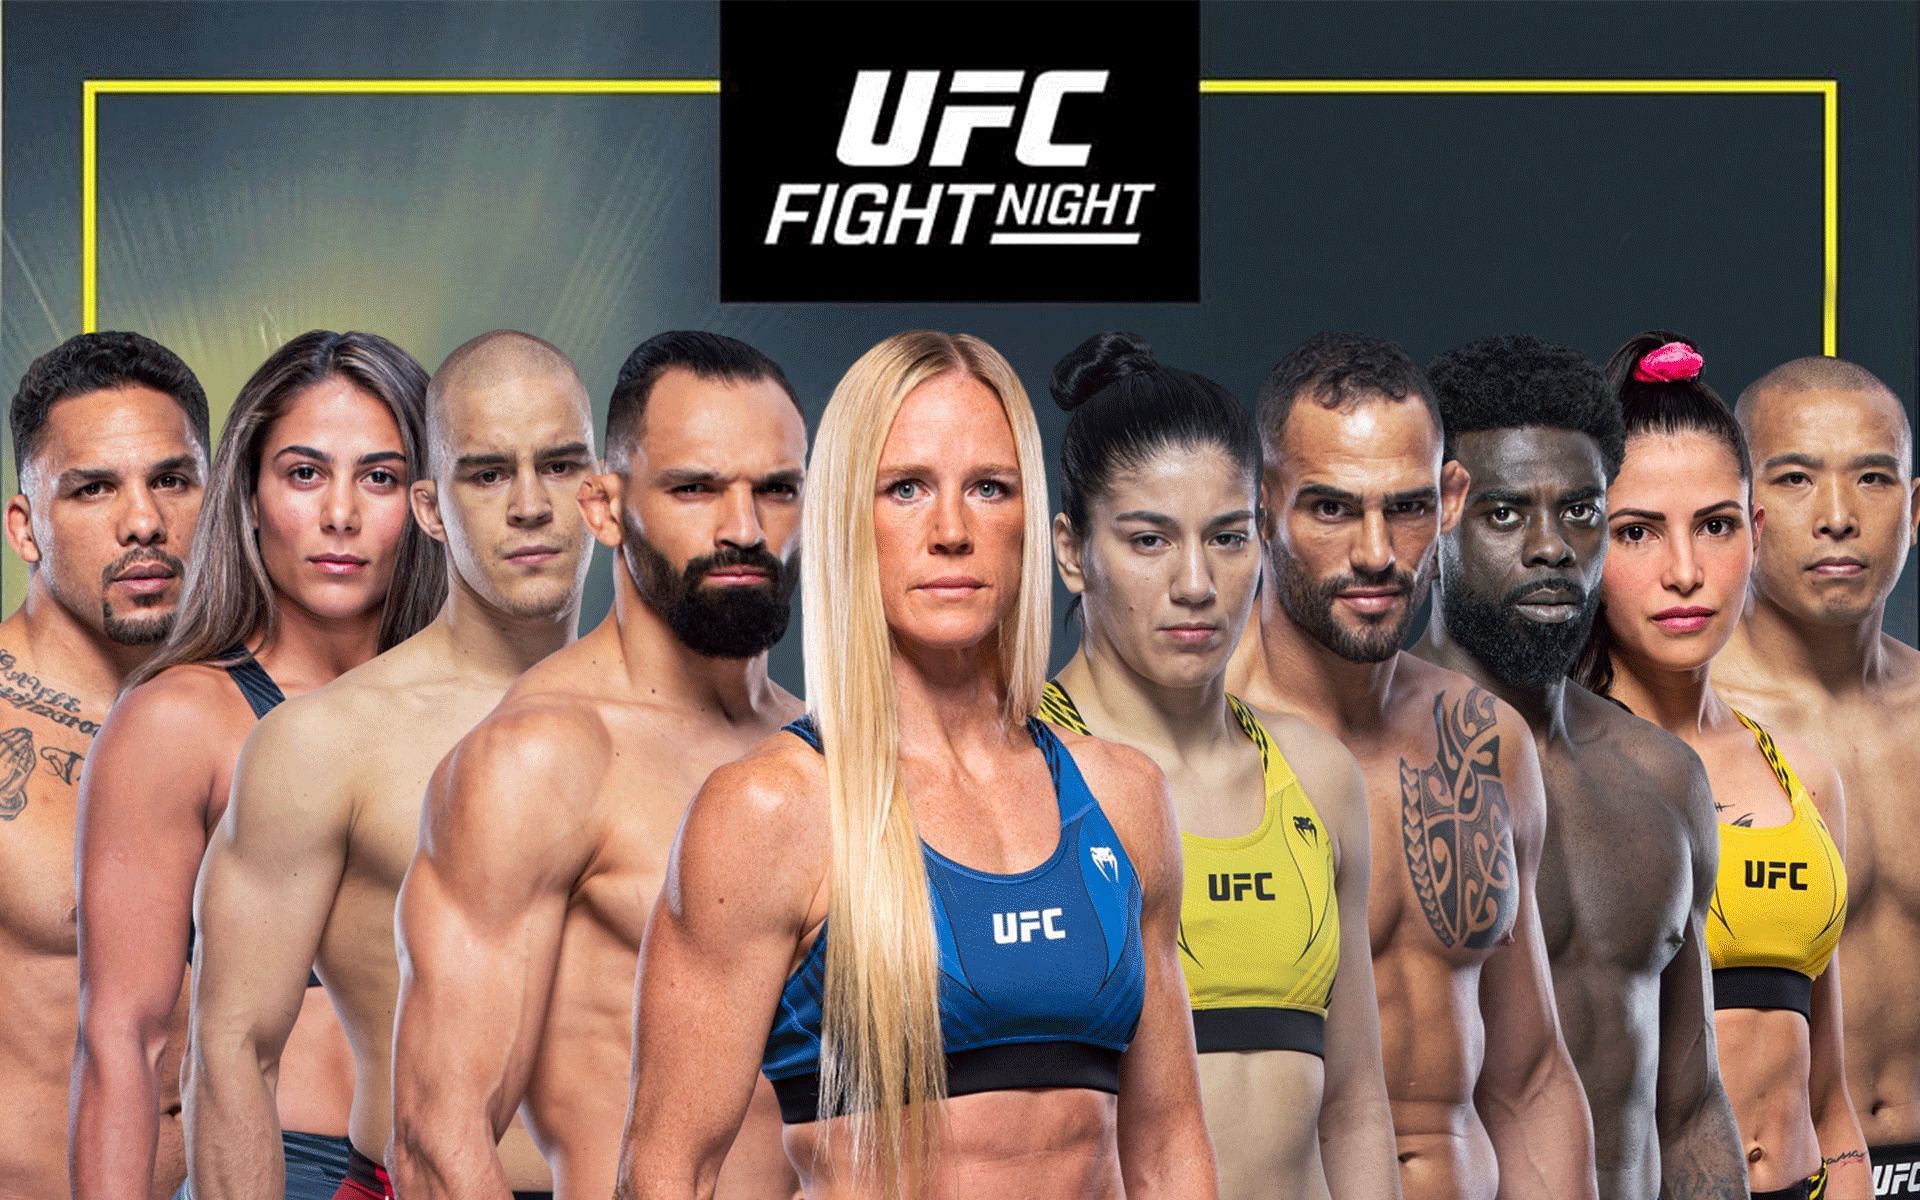 UFC Fight Night: Holm vs. Vieira bonuses [Image credits: ufc.com]